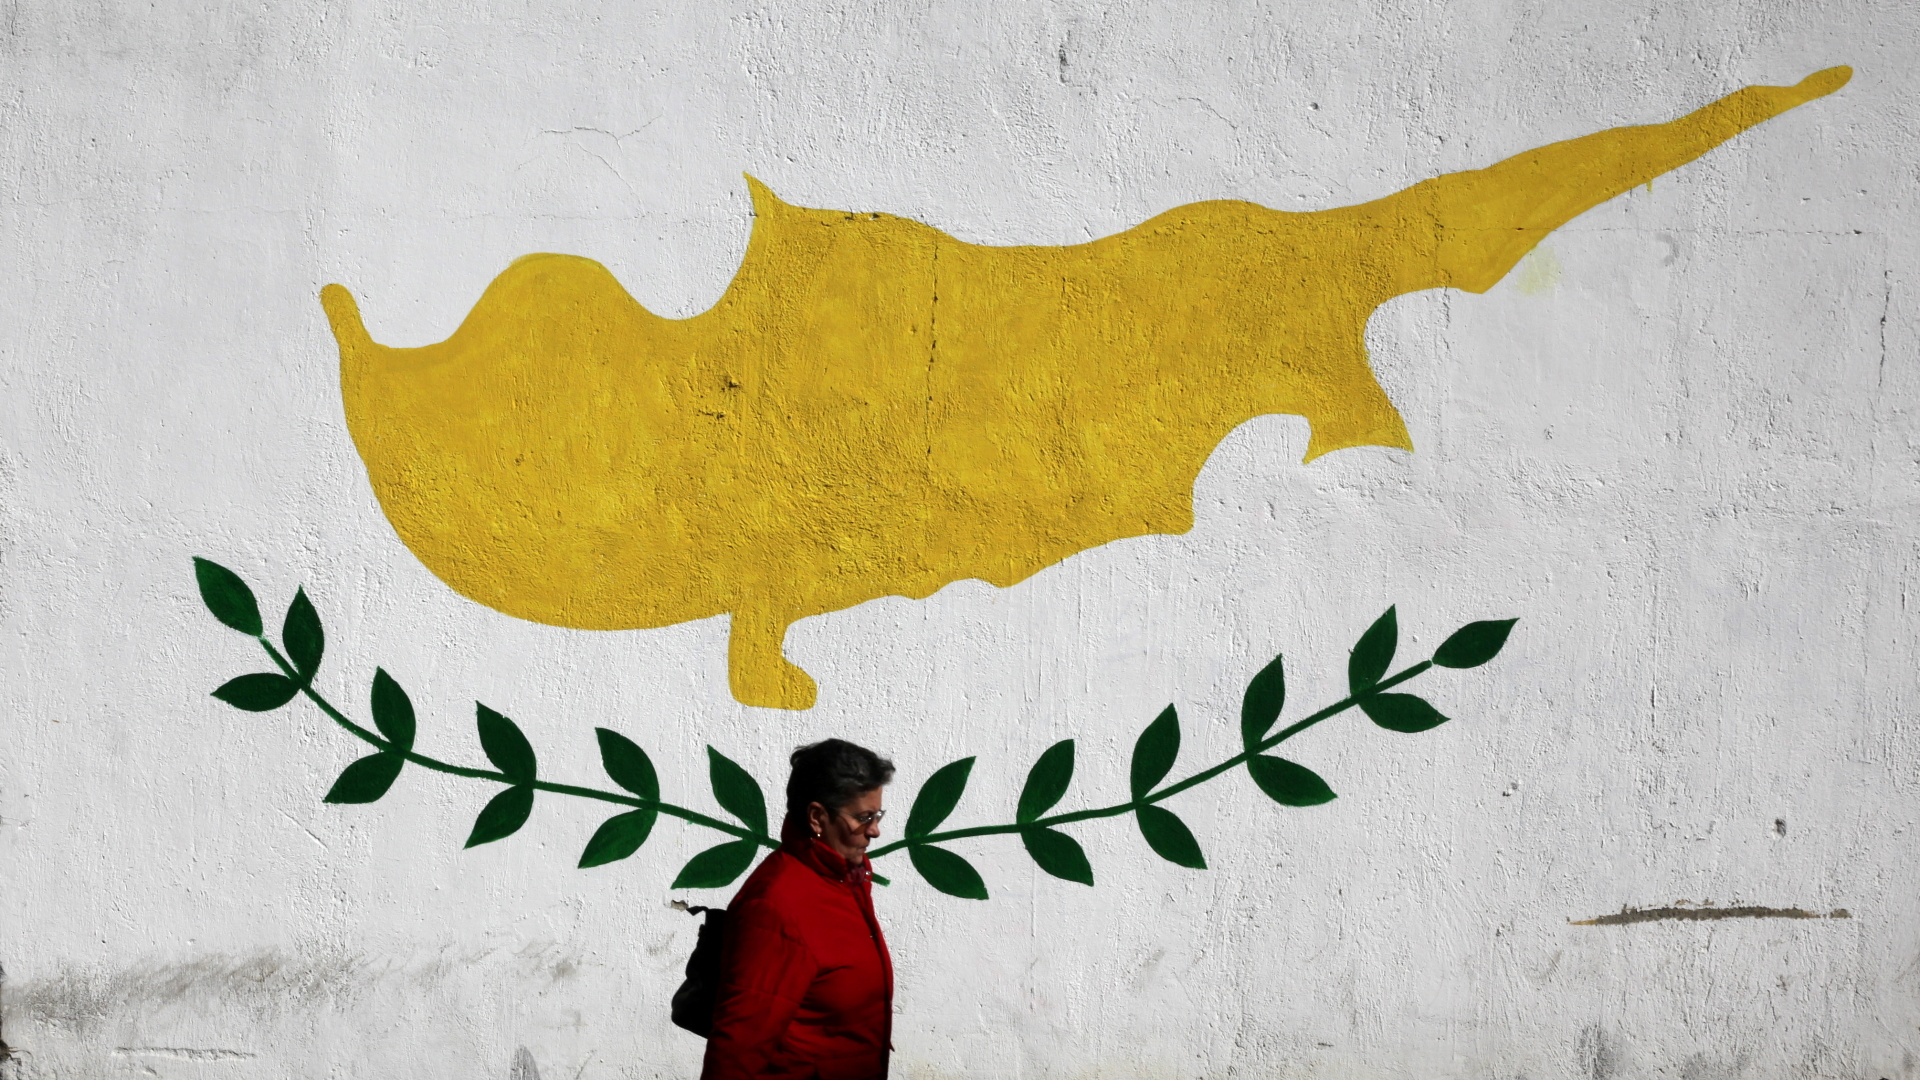 Wandgemälde mit der Flagge Zyperns | REUTERS